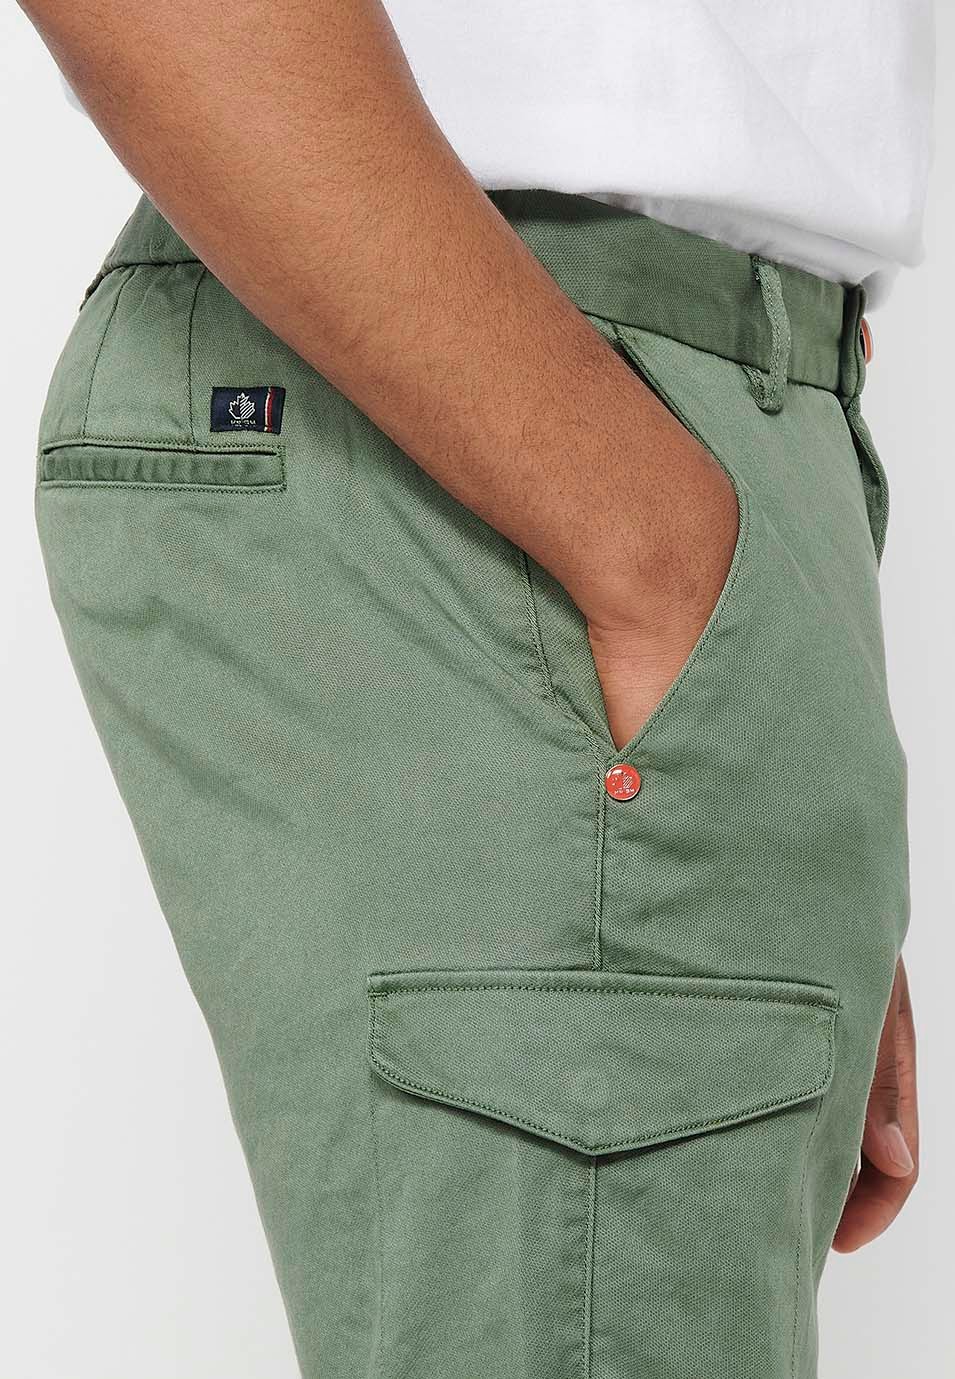 Pantalón corto con Cintura engomada y cierre con cremallera y botón con Bolsillos, dos laterales con solapa de Color Verde para Hombre 8